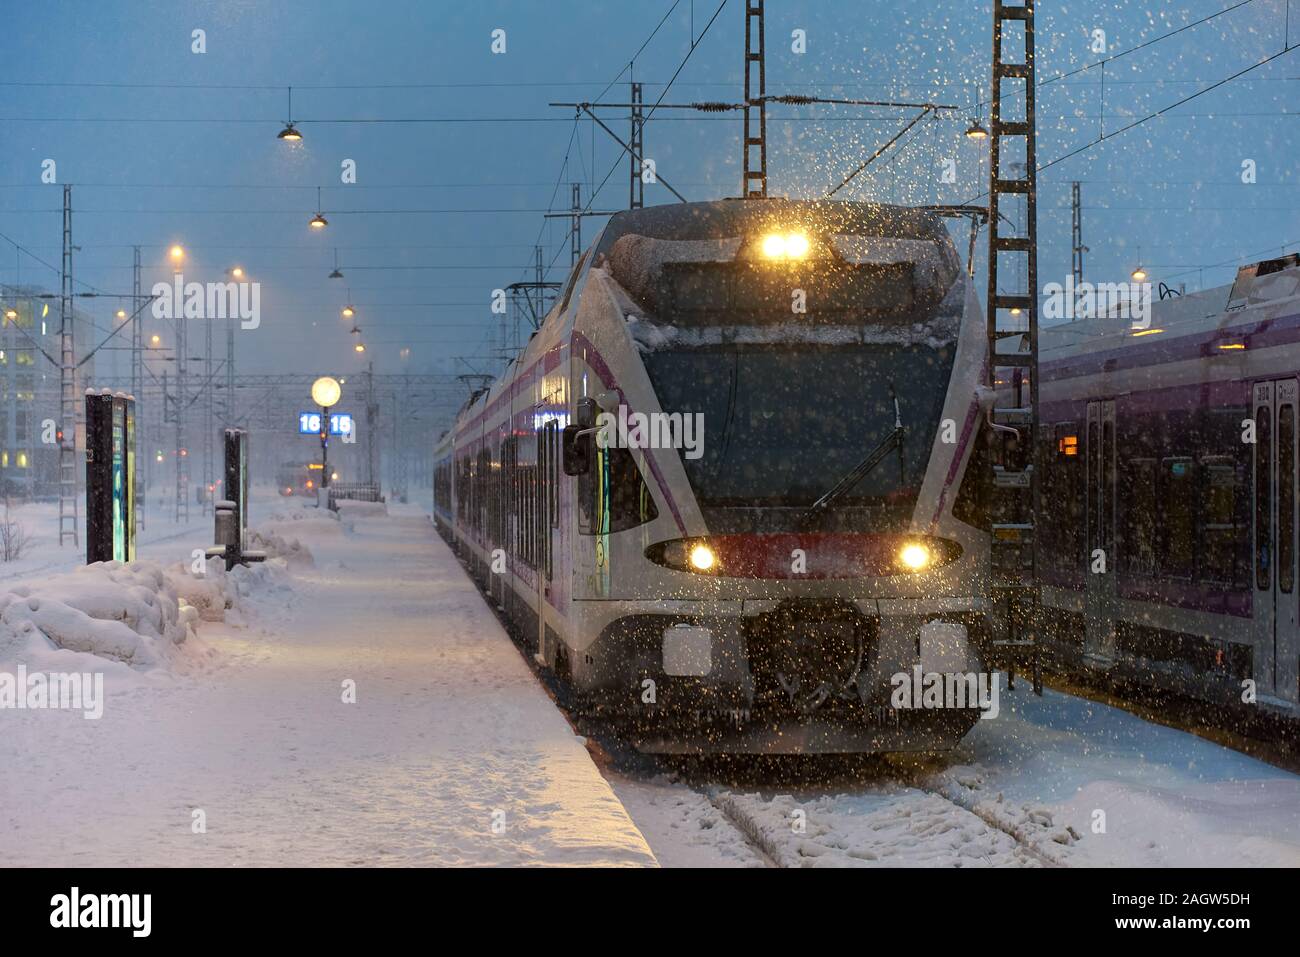 Helsinki, Finlande - Février 6, 2019 local : commuter train arrivant à la gare centrale d'Helsinki dans une tempête de neige juste avant l'aube dans le d Banque D'Images